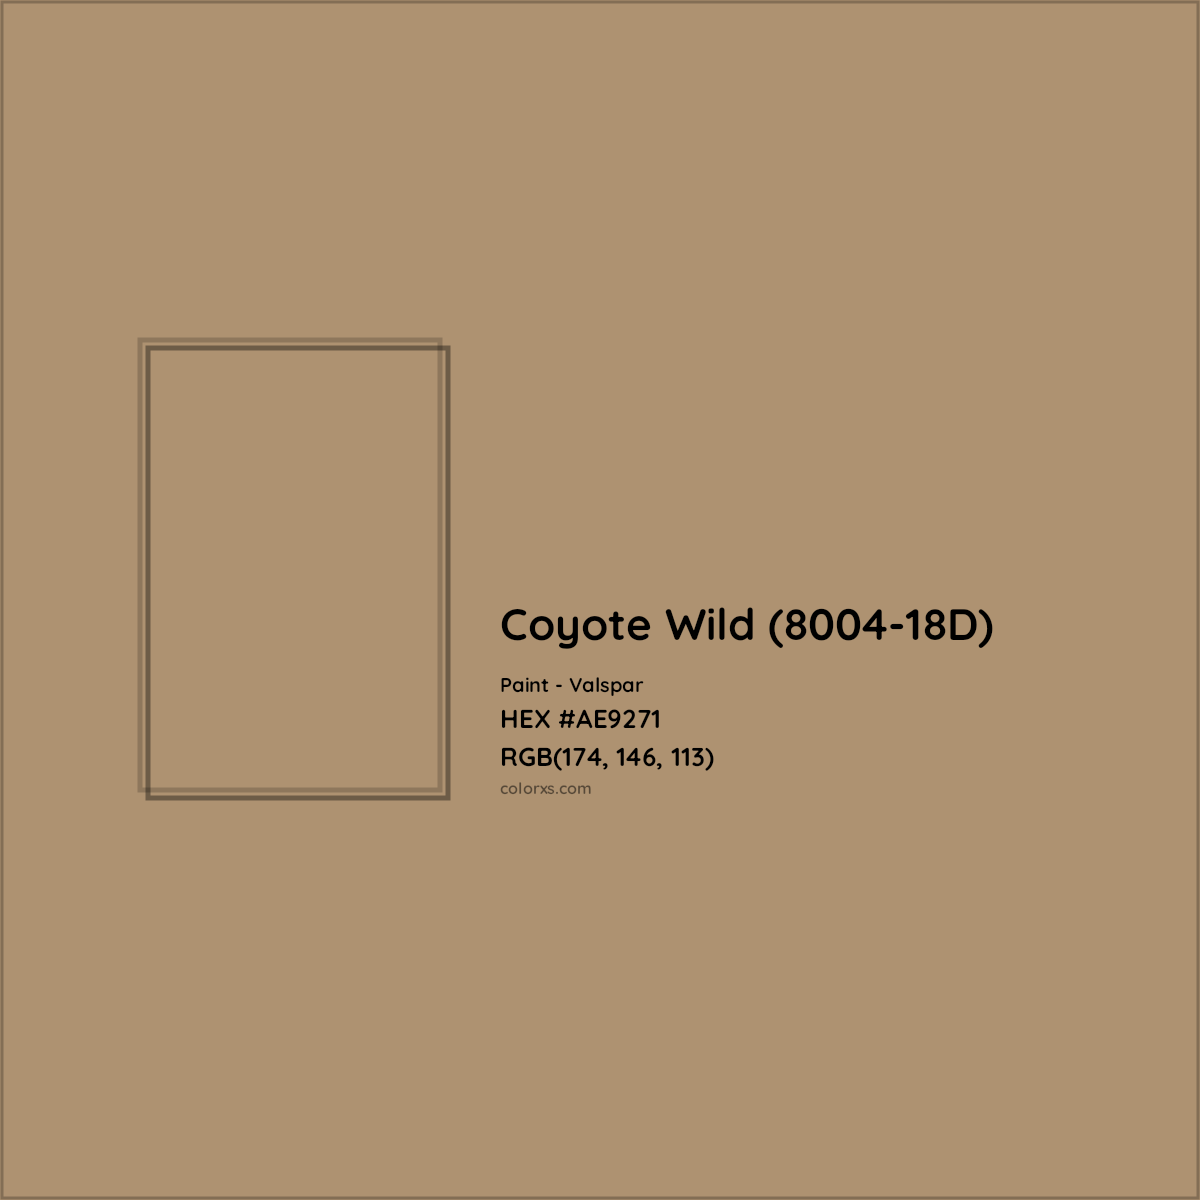 HEX #AE9271 Coyote Wild (8004-18D) Paint Valspar - Color Code